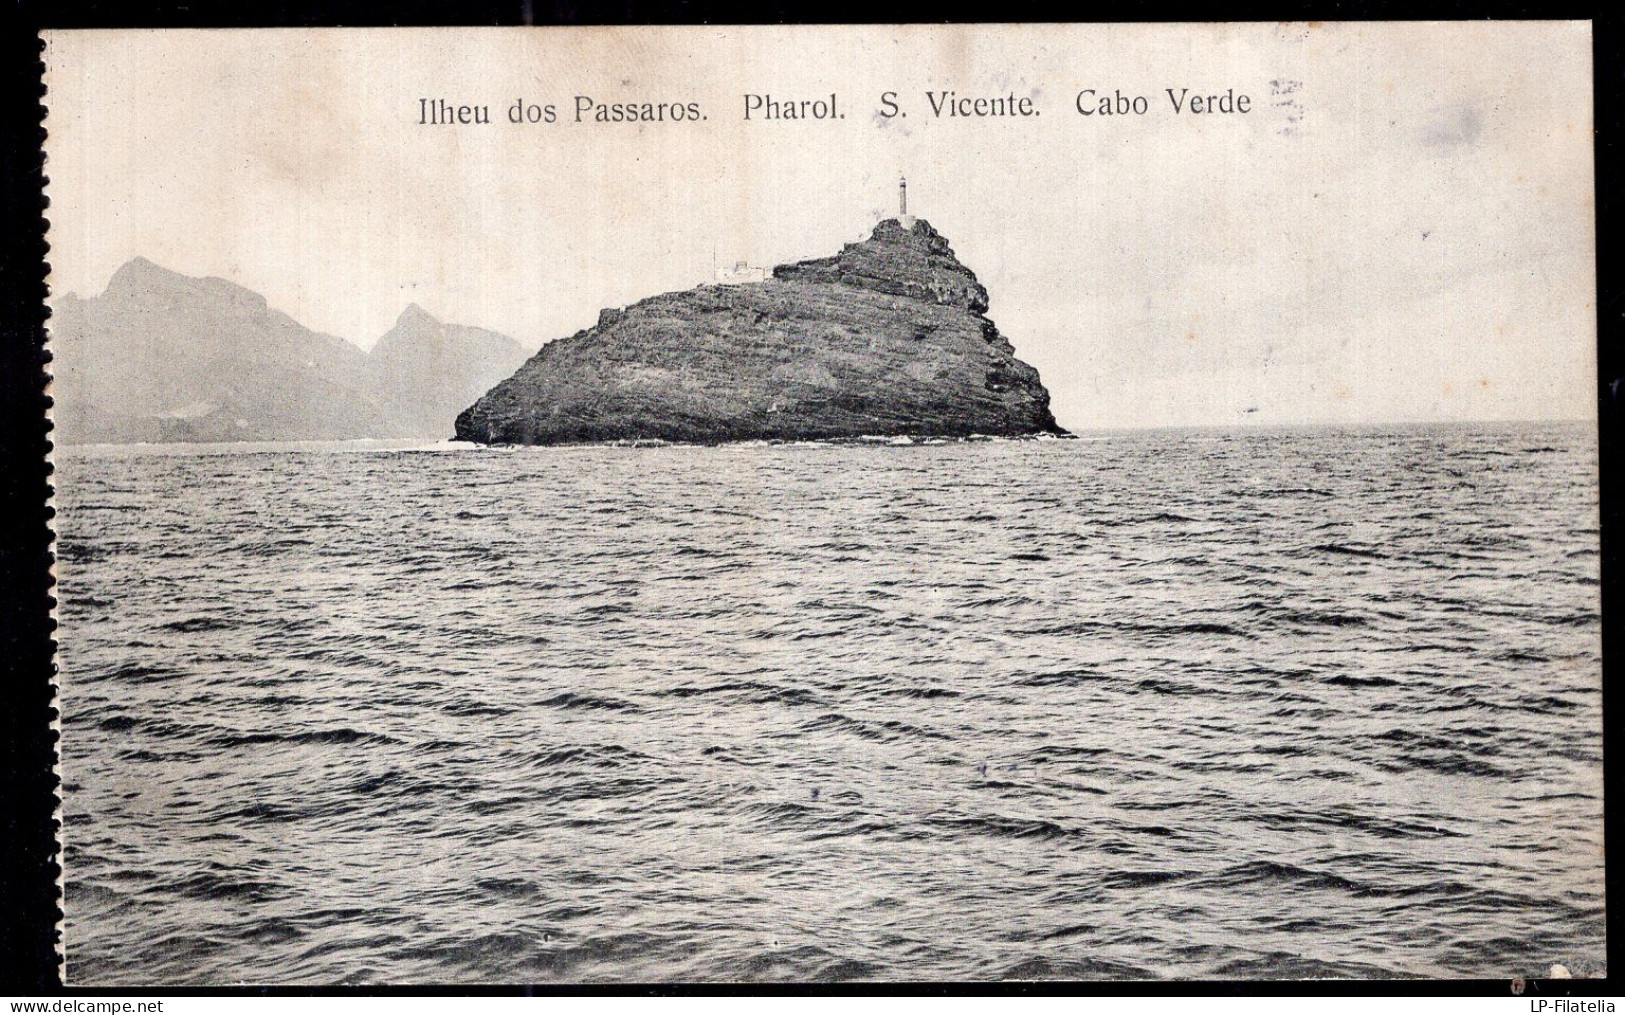 Cabo Verde - Circa 1920 - St. Vincent - Ilheu Dos Passaros - Pharol - Capo Verde